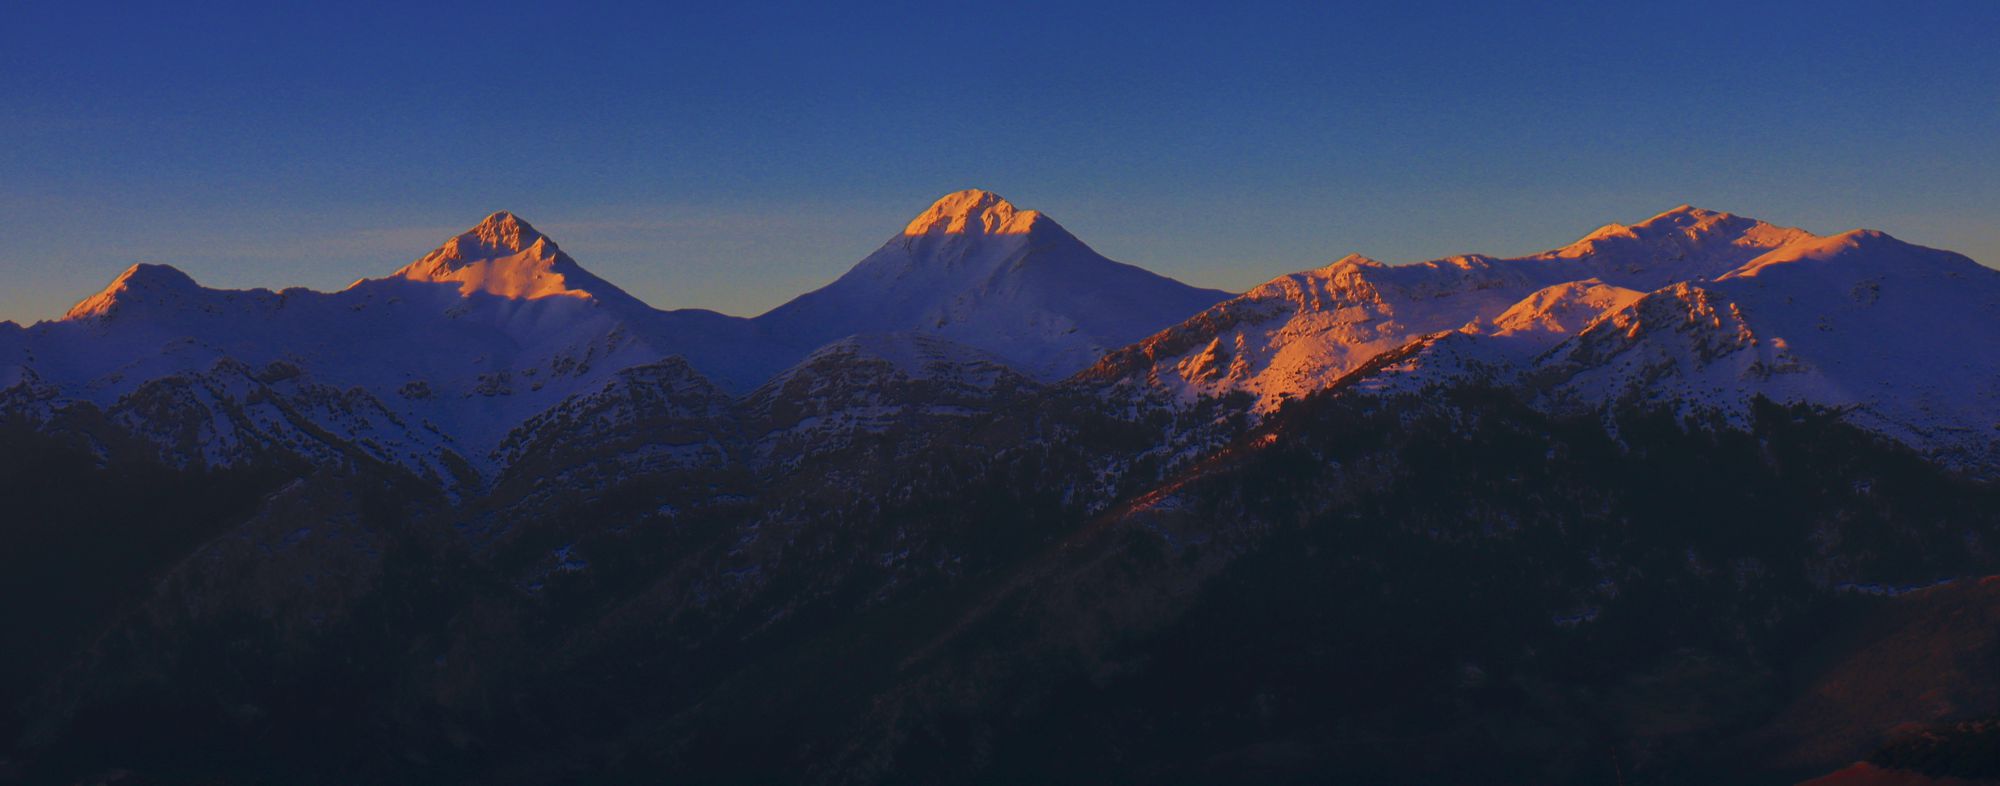 Ερύμανθος: Οι ψηλότερες κορυφές Ωλονός, Μουγγίλα και Νεραϊδοβούνα